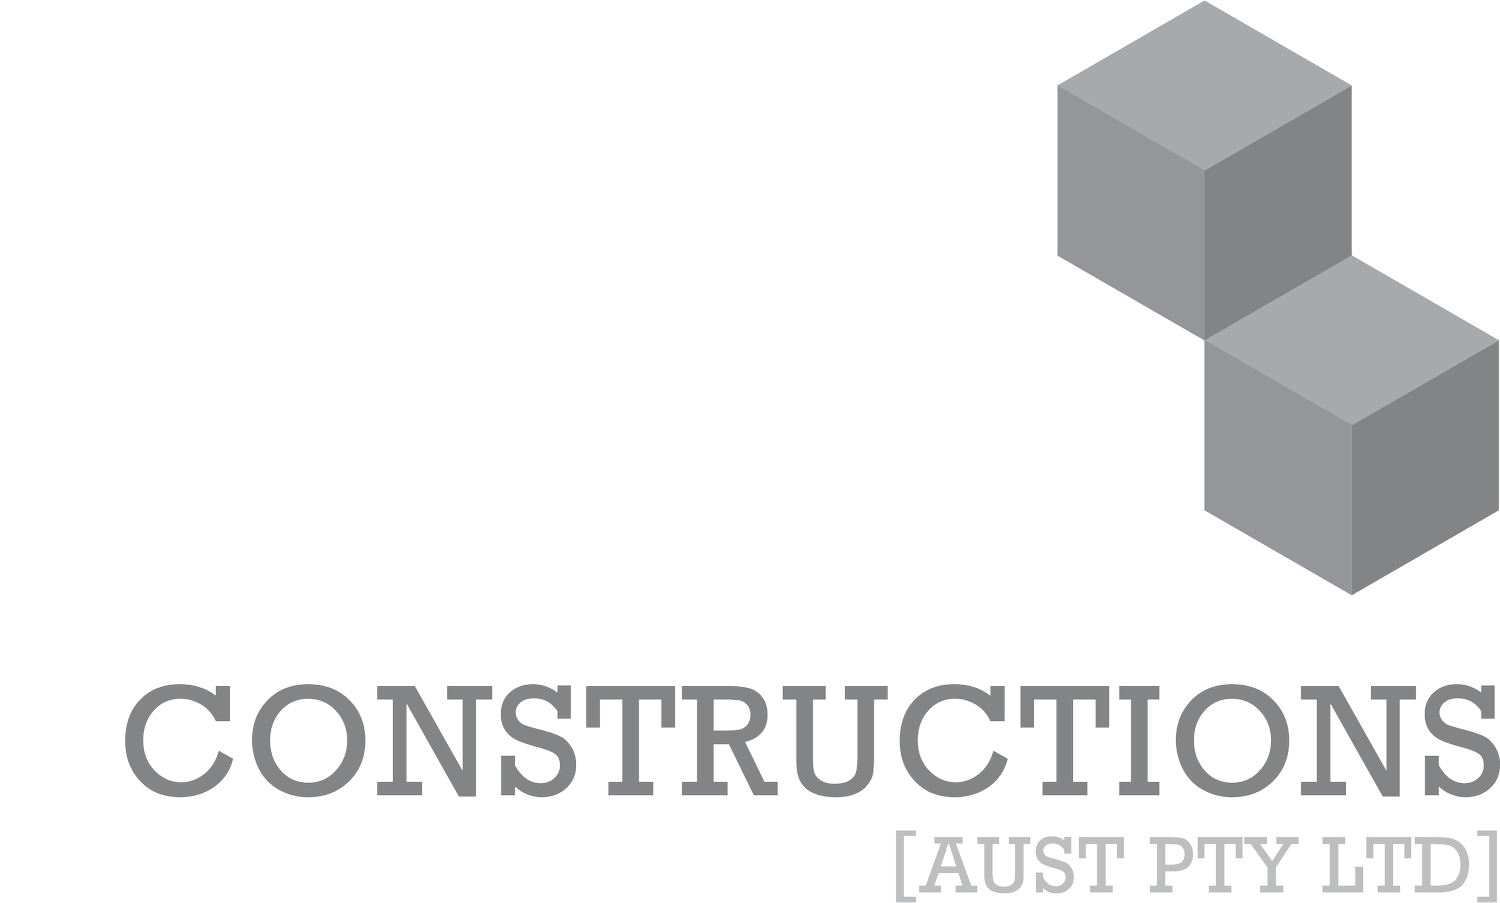 JSB Constructions